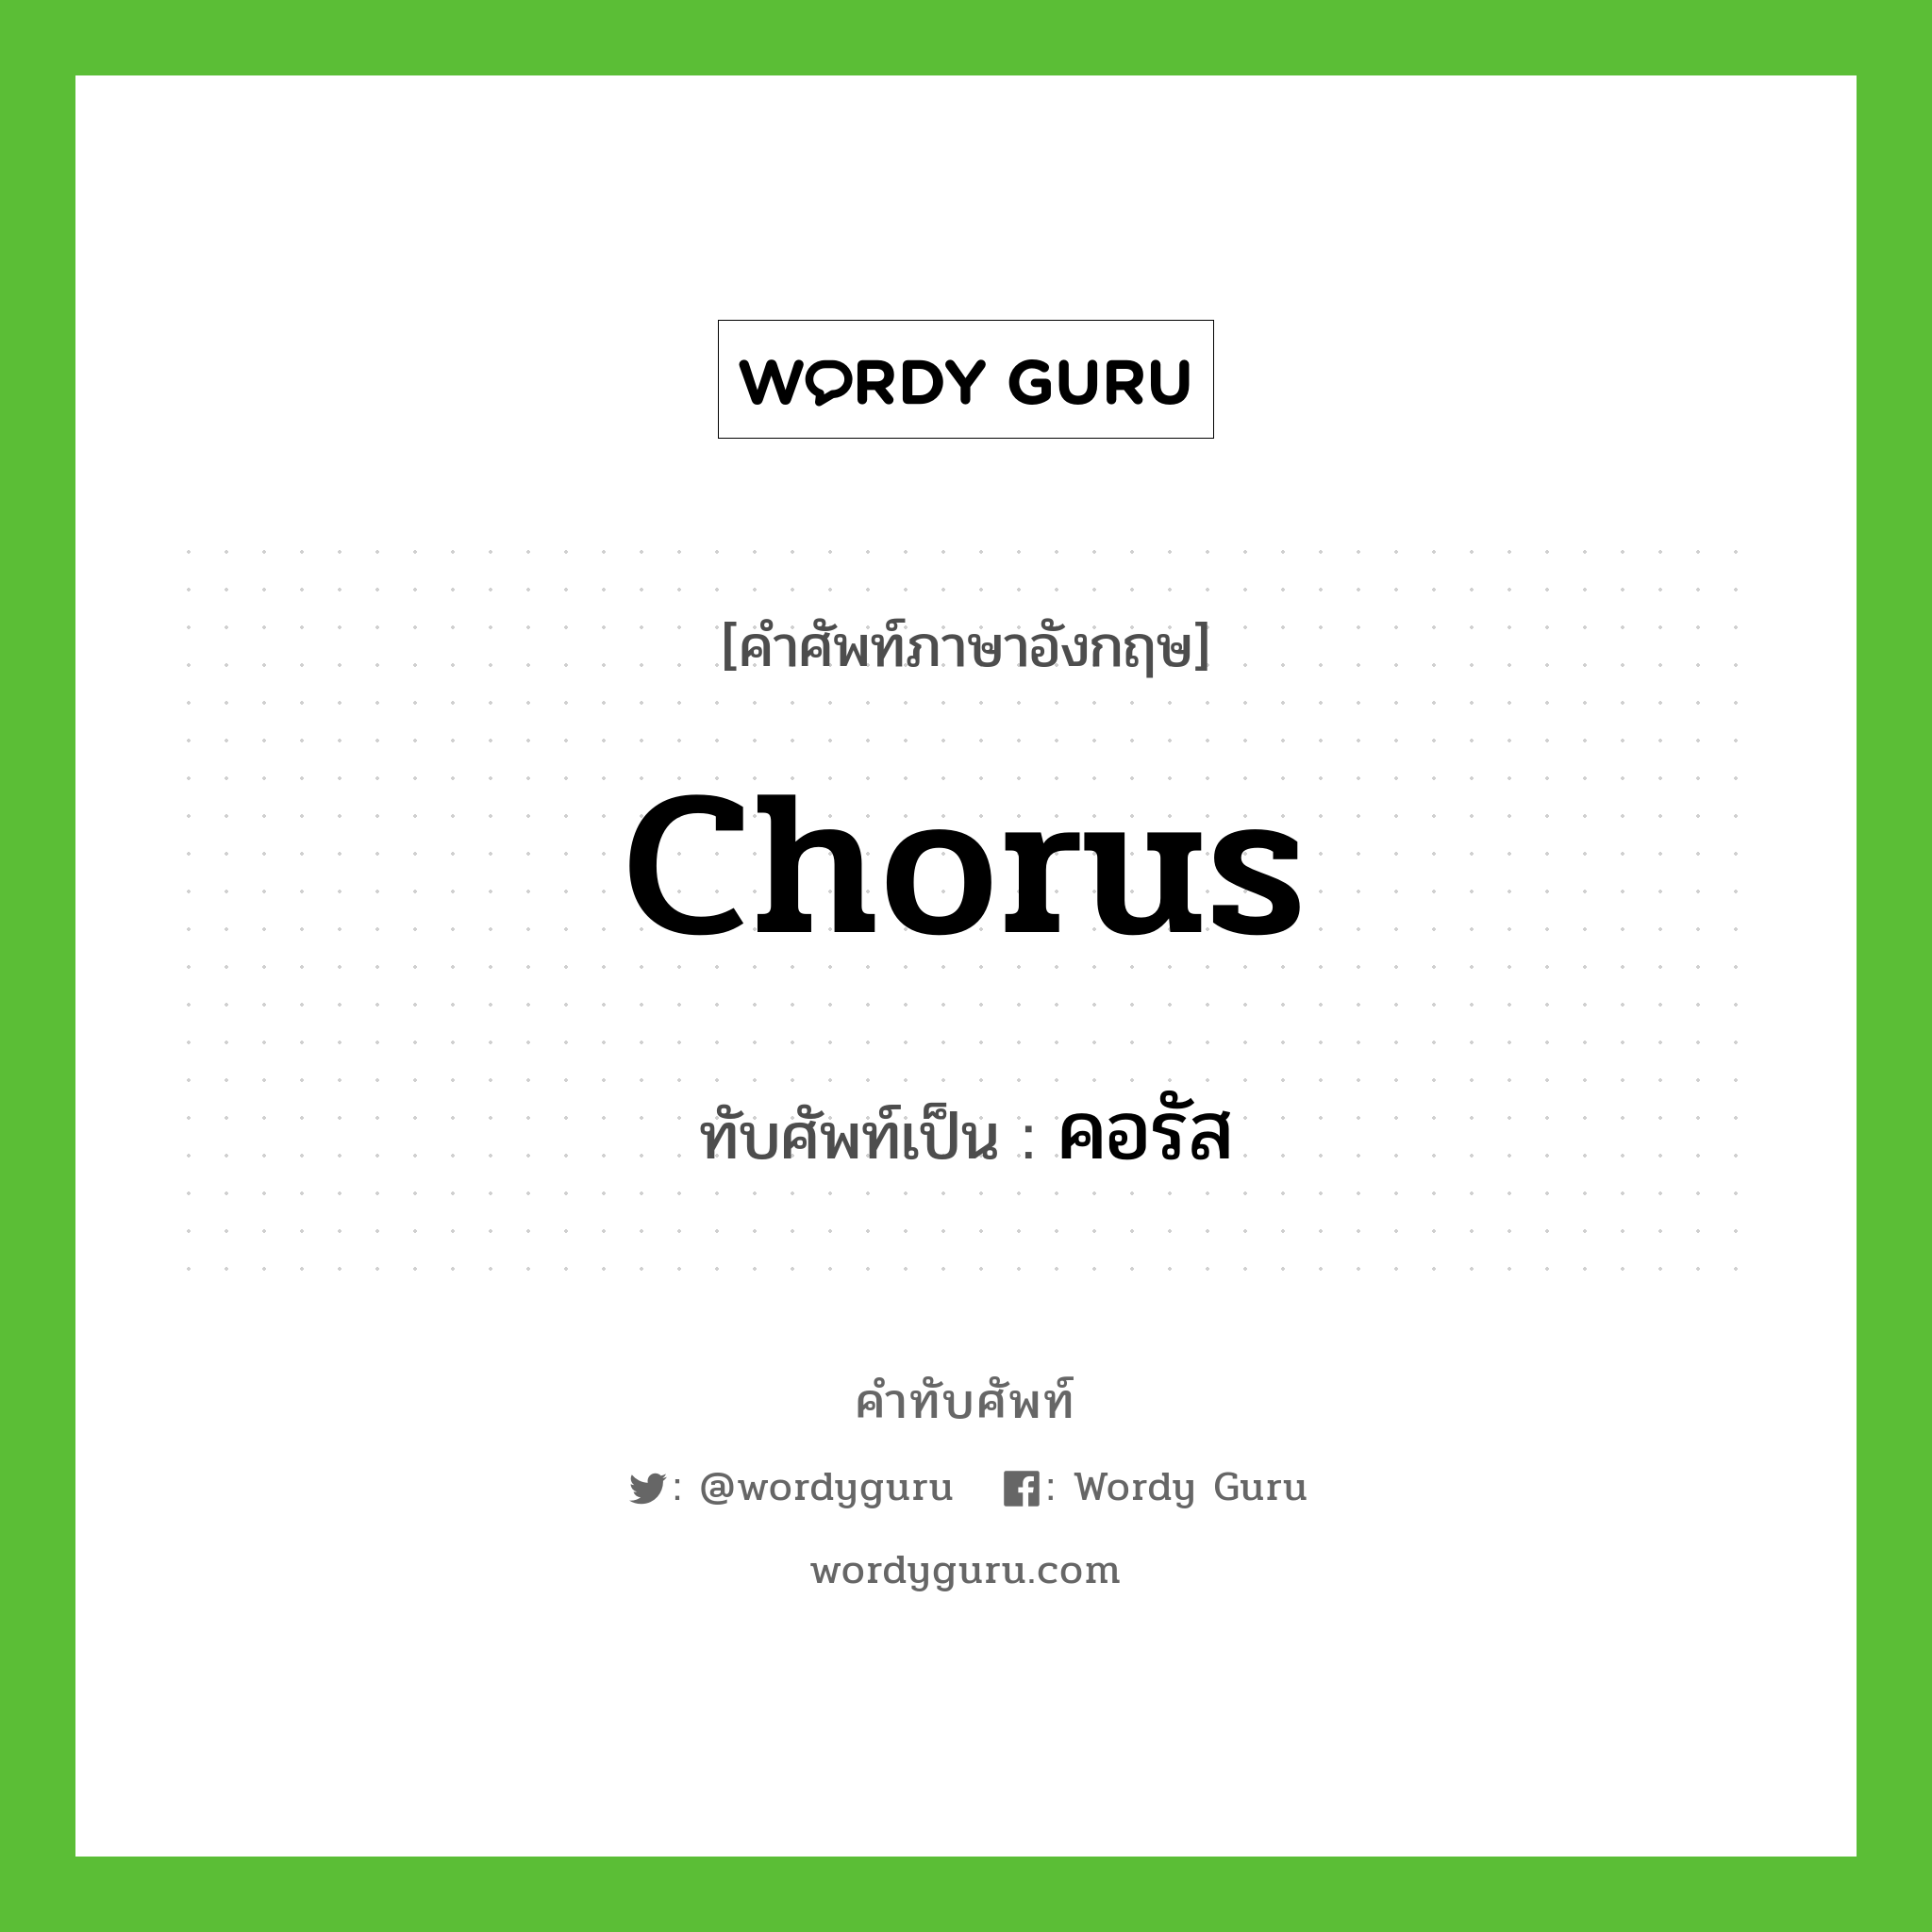 chorus เขียนเป็นคำไทยว่าอะไร?, คำศัพท์ภาษาอังกฤษ chorus ทับศัพท์เป็น คอรัส